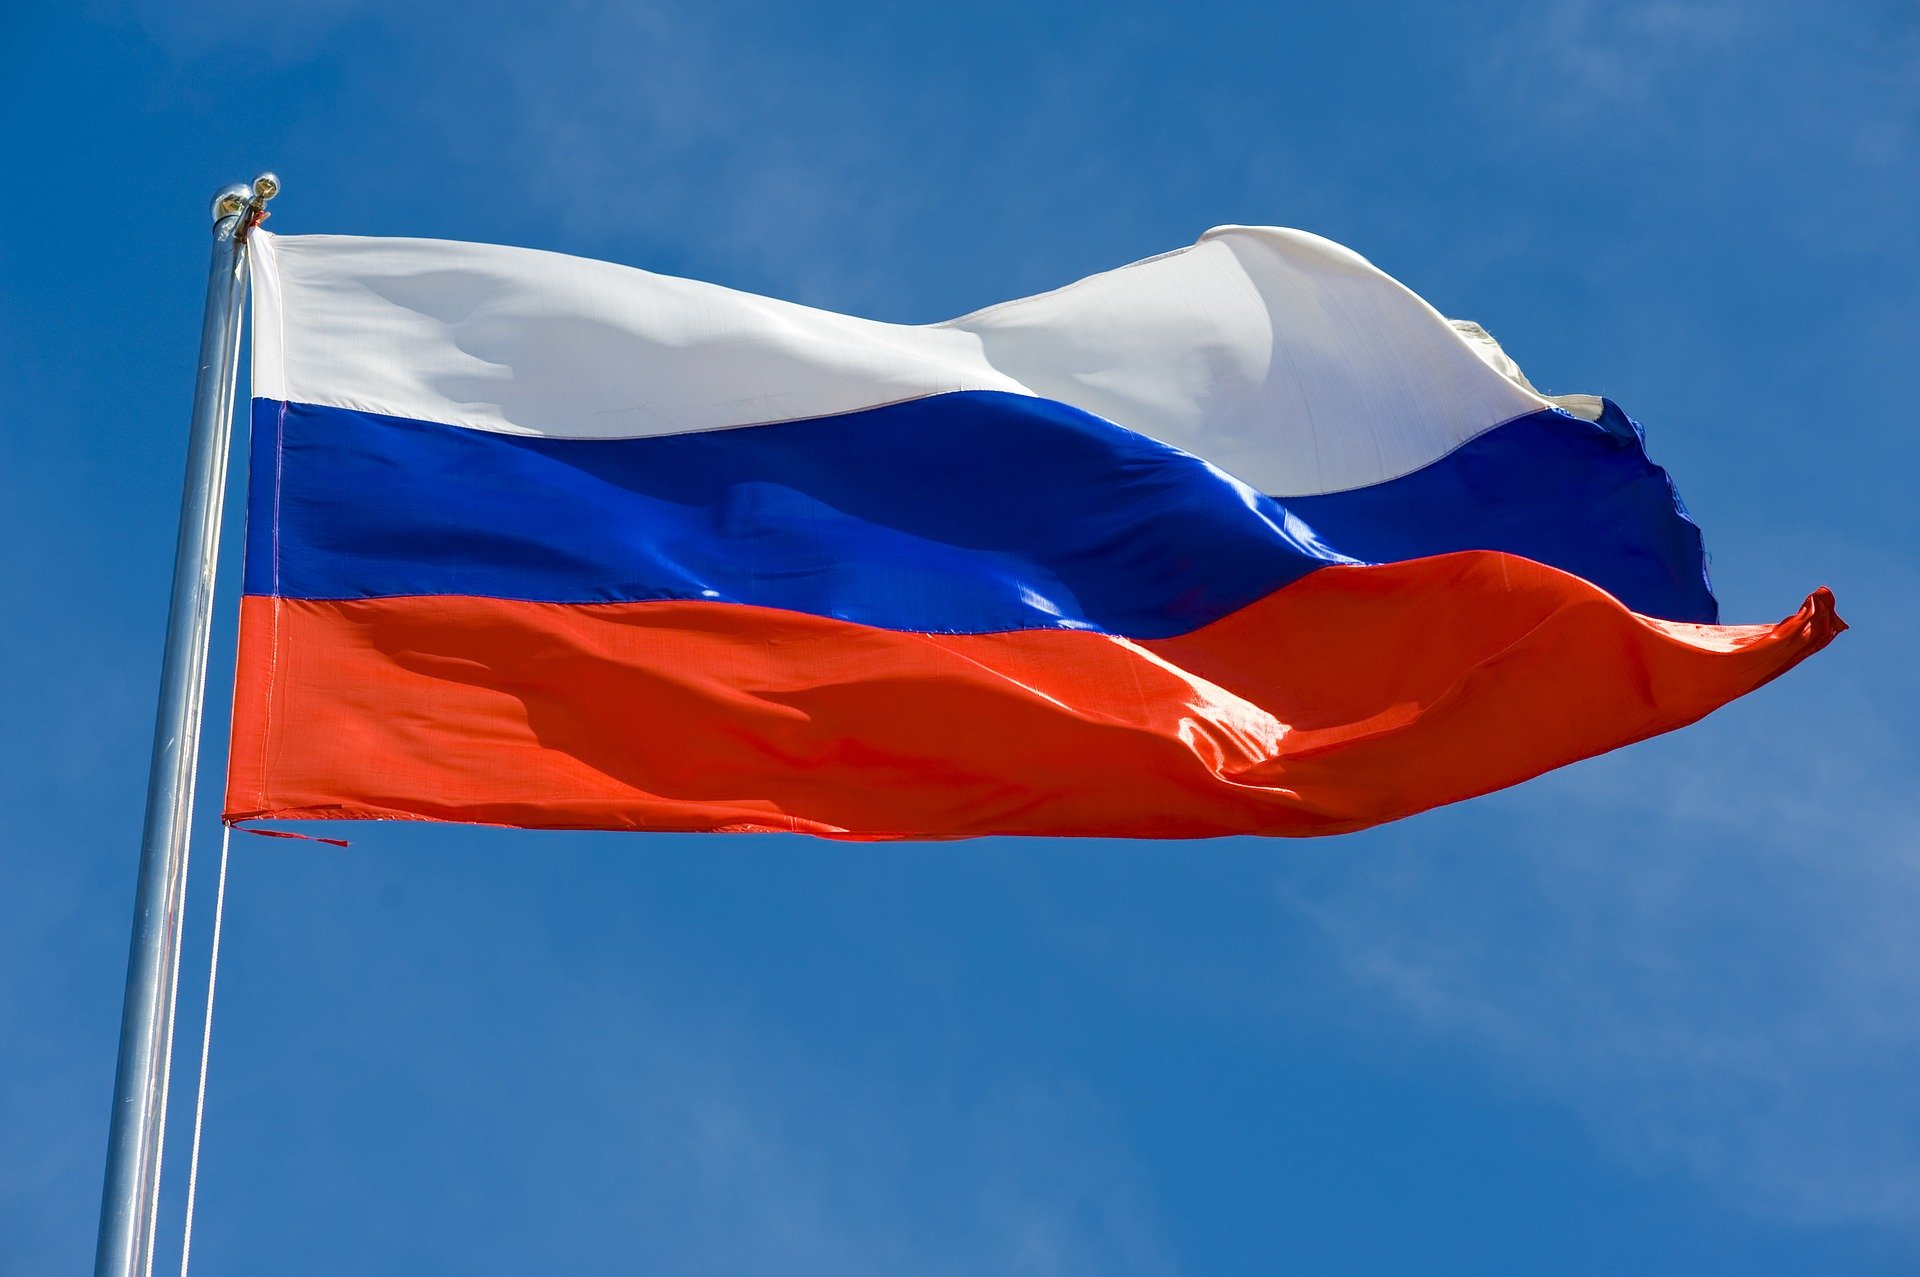 Шугалей призвал РФ жестче реагировать на обвинения со стороны НАТО